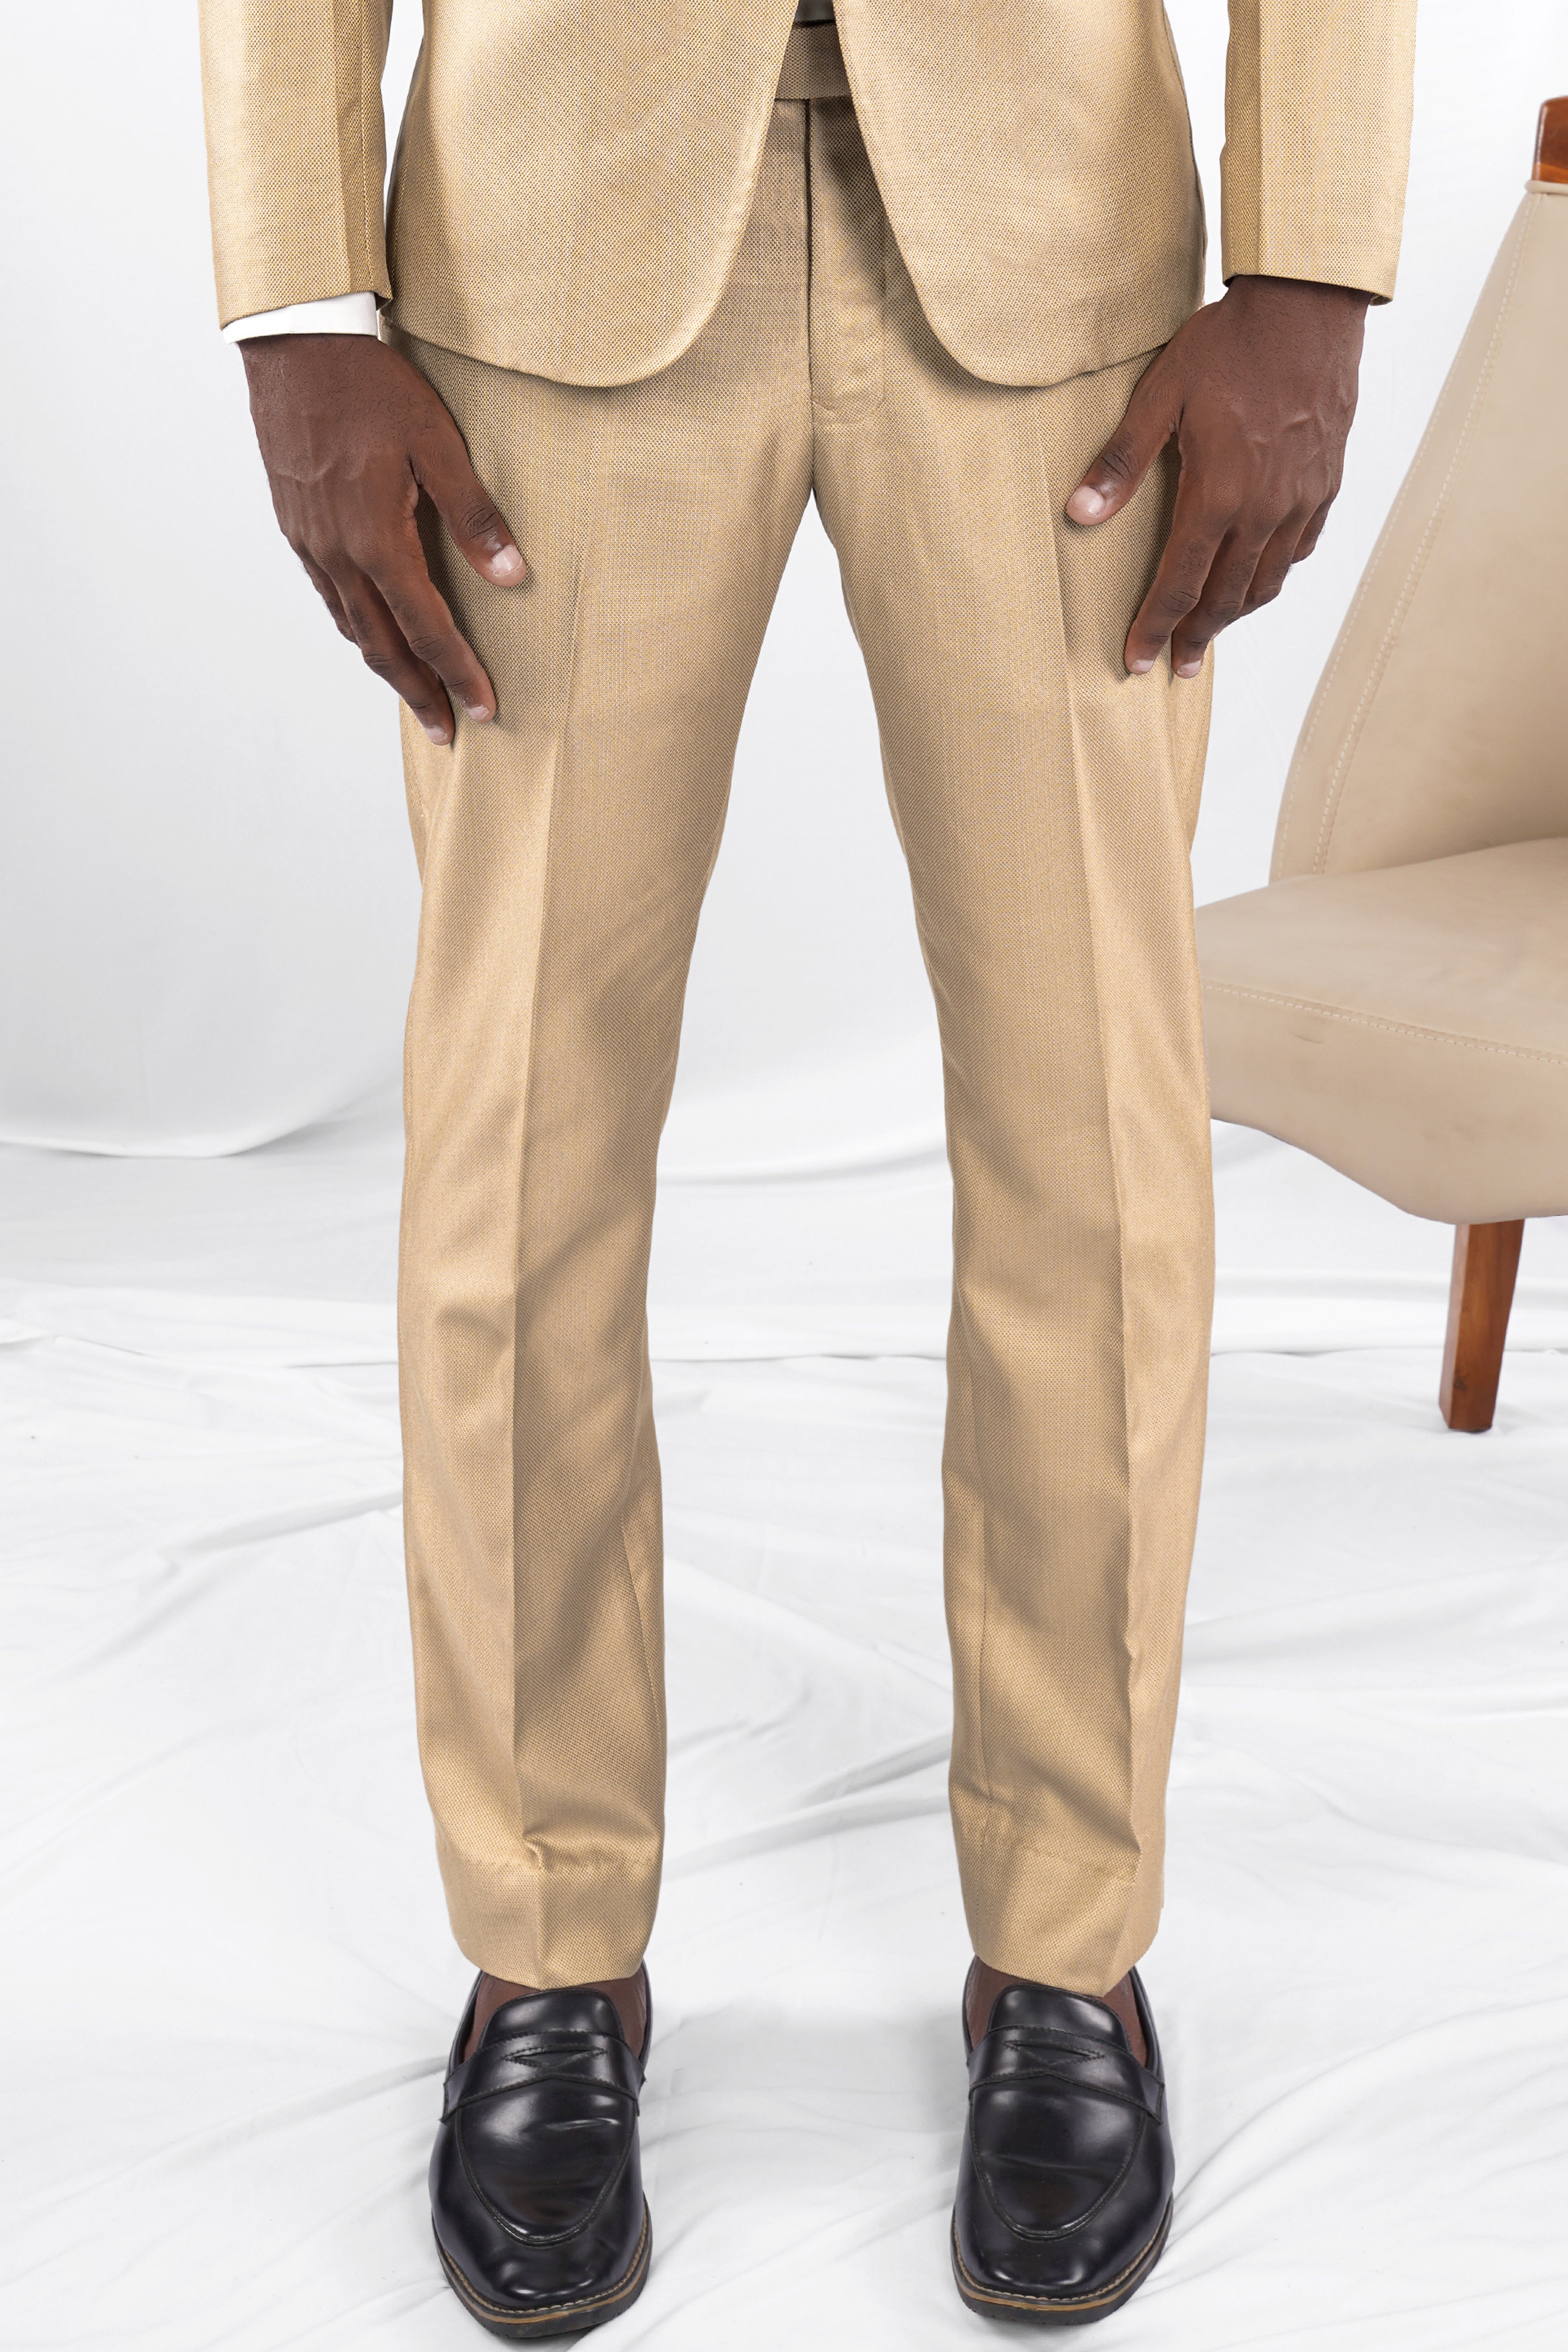 Callaway Apparel Men's Textured 5 Pocket Golf Pant | Golf Apparel Shop